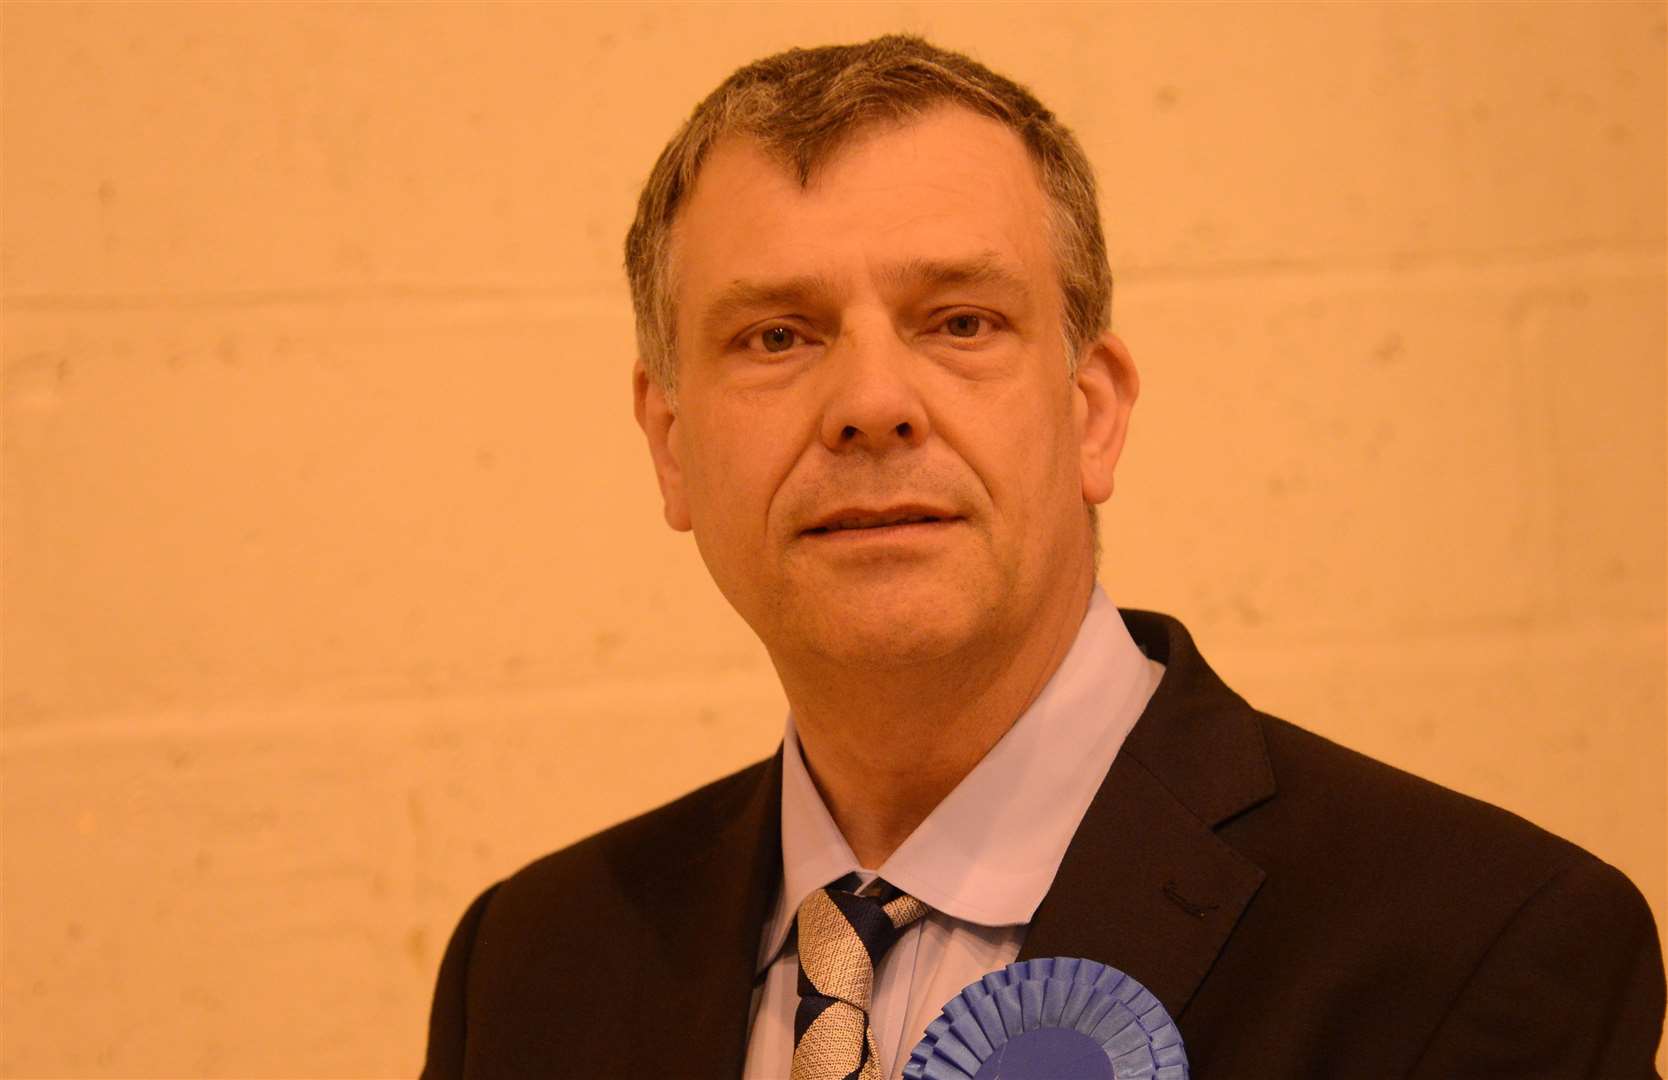 Cllr Paul Bartlett, Deputy Leader of Ashford Borough Council